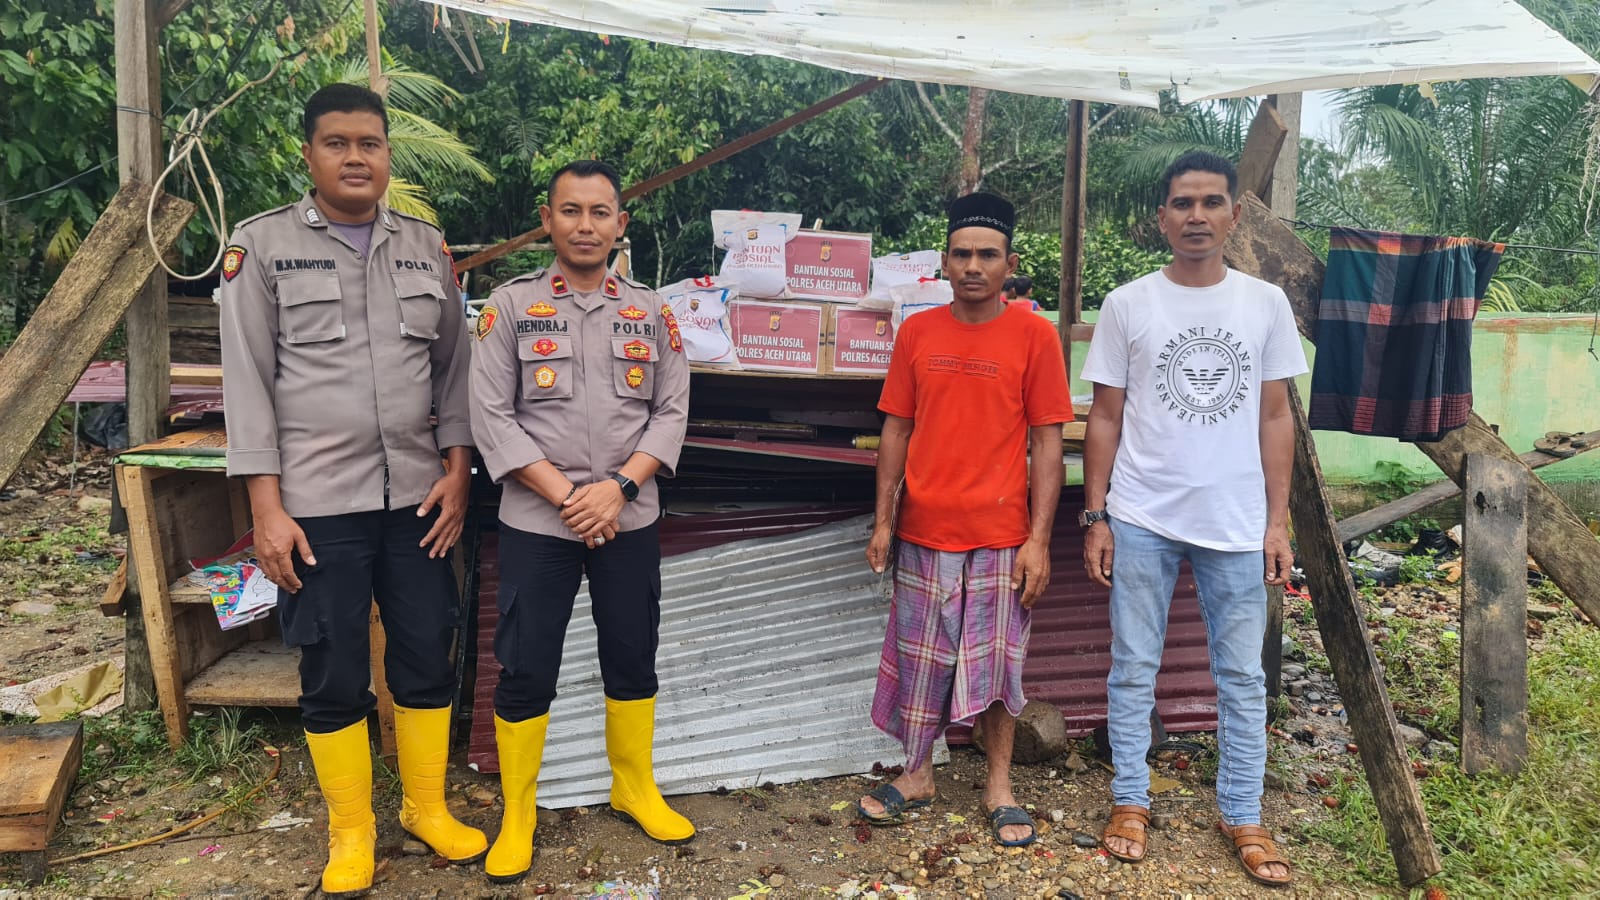 Kapolres Aceh Utara Beri Bantuan / Tali Asih Untuk Korban musibah Roboh Rumah